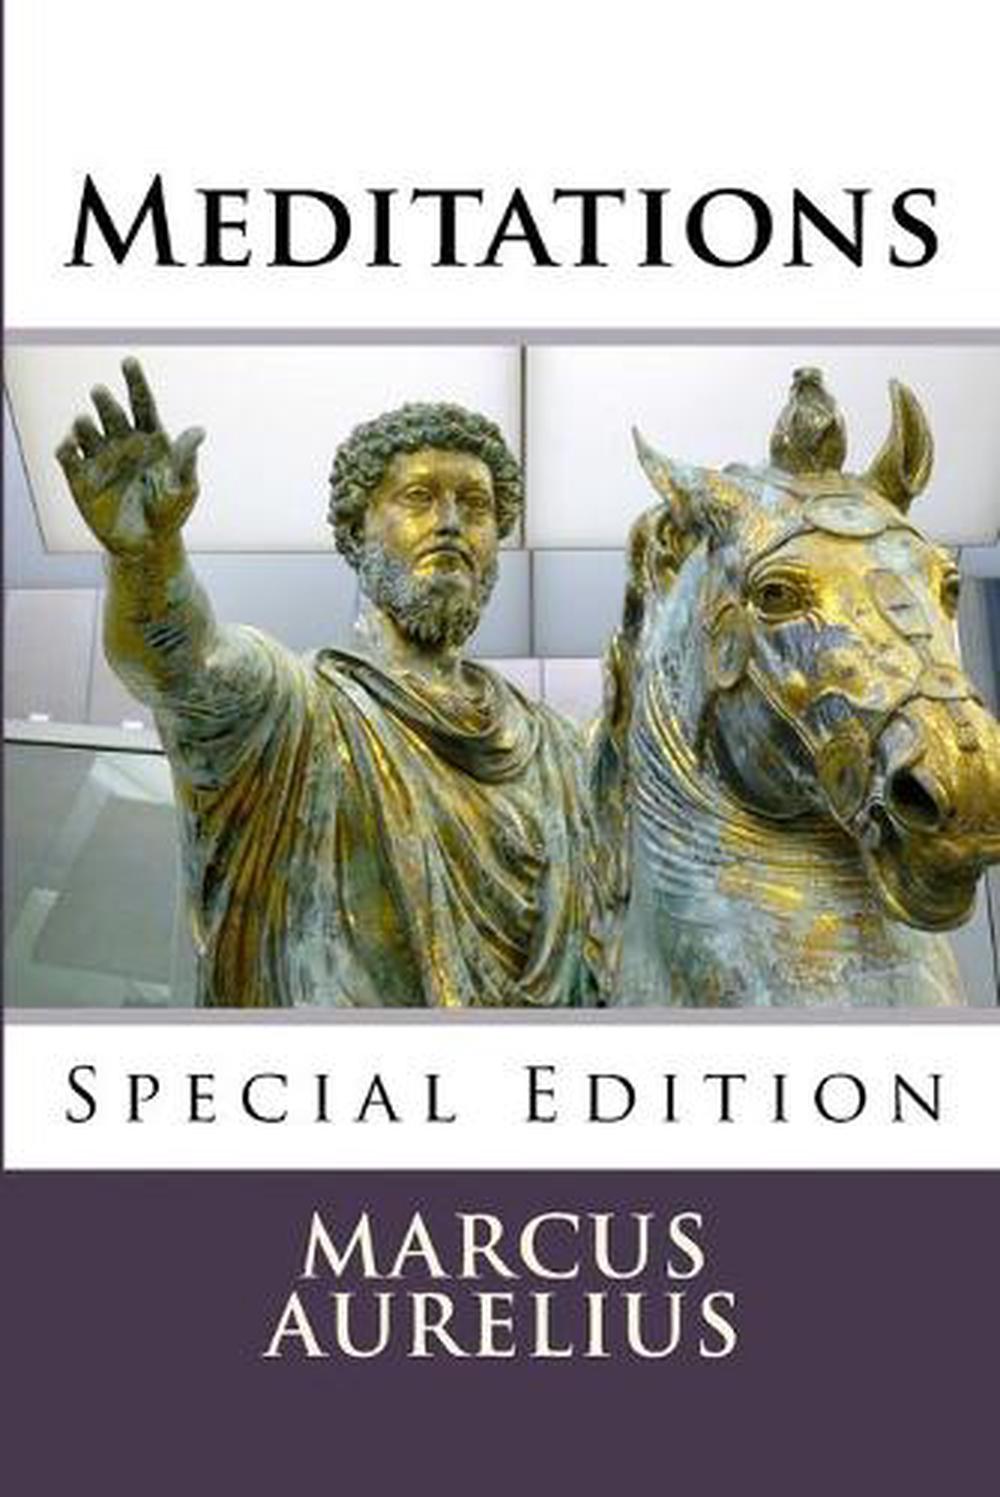 marcus aurelius meditations pdf free download